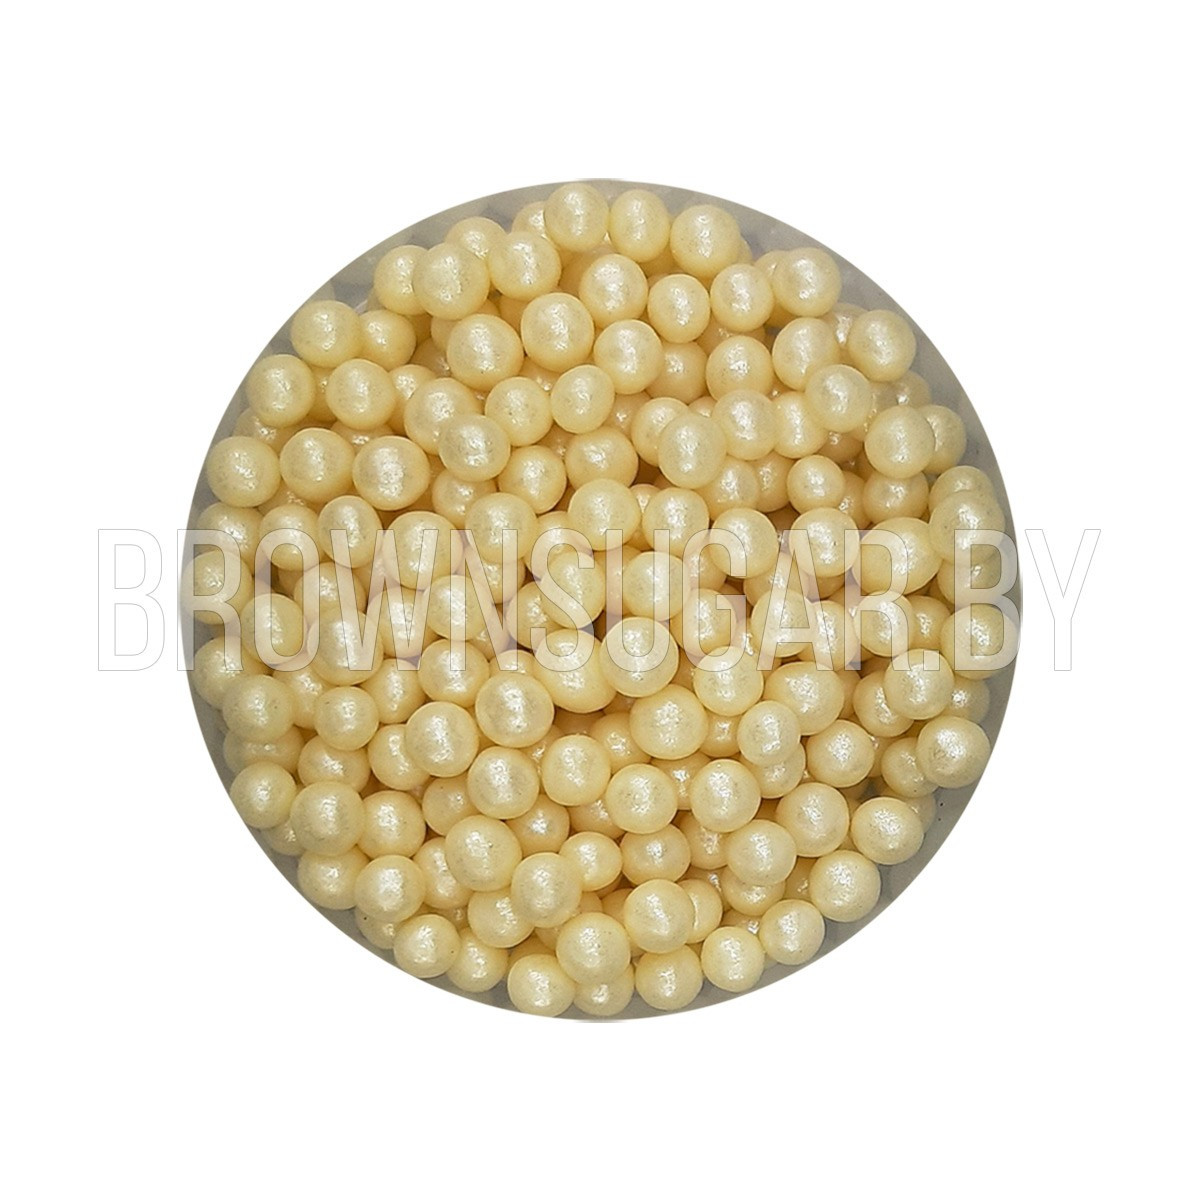 Драже взорванные зерна риса Жемчуг белый 6-8 мм (Россия, 50 гр)